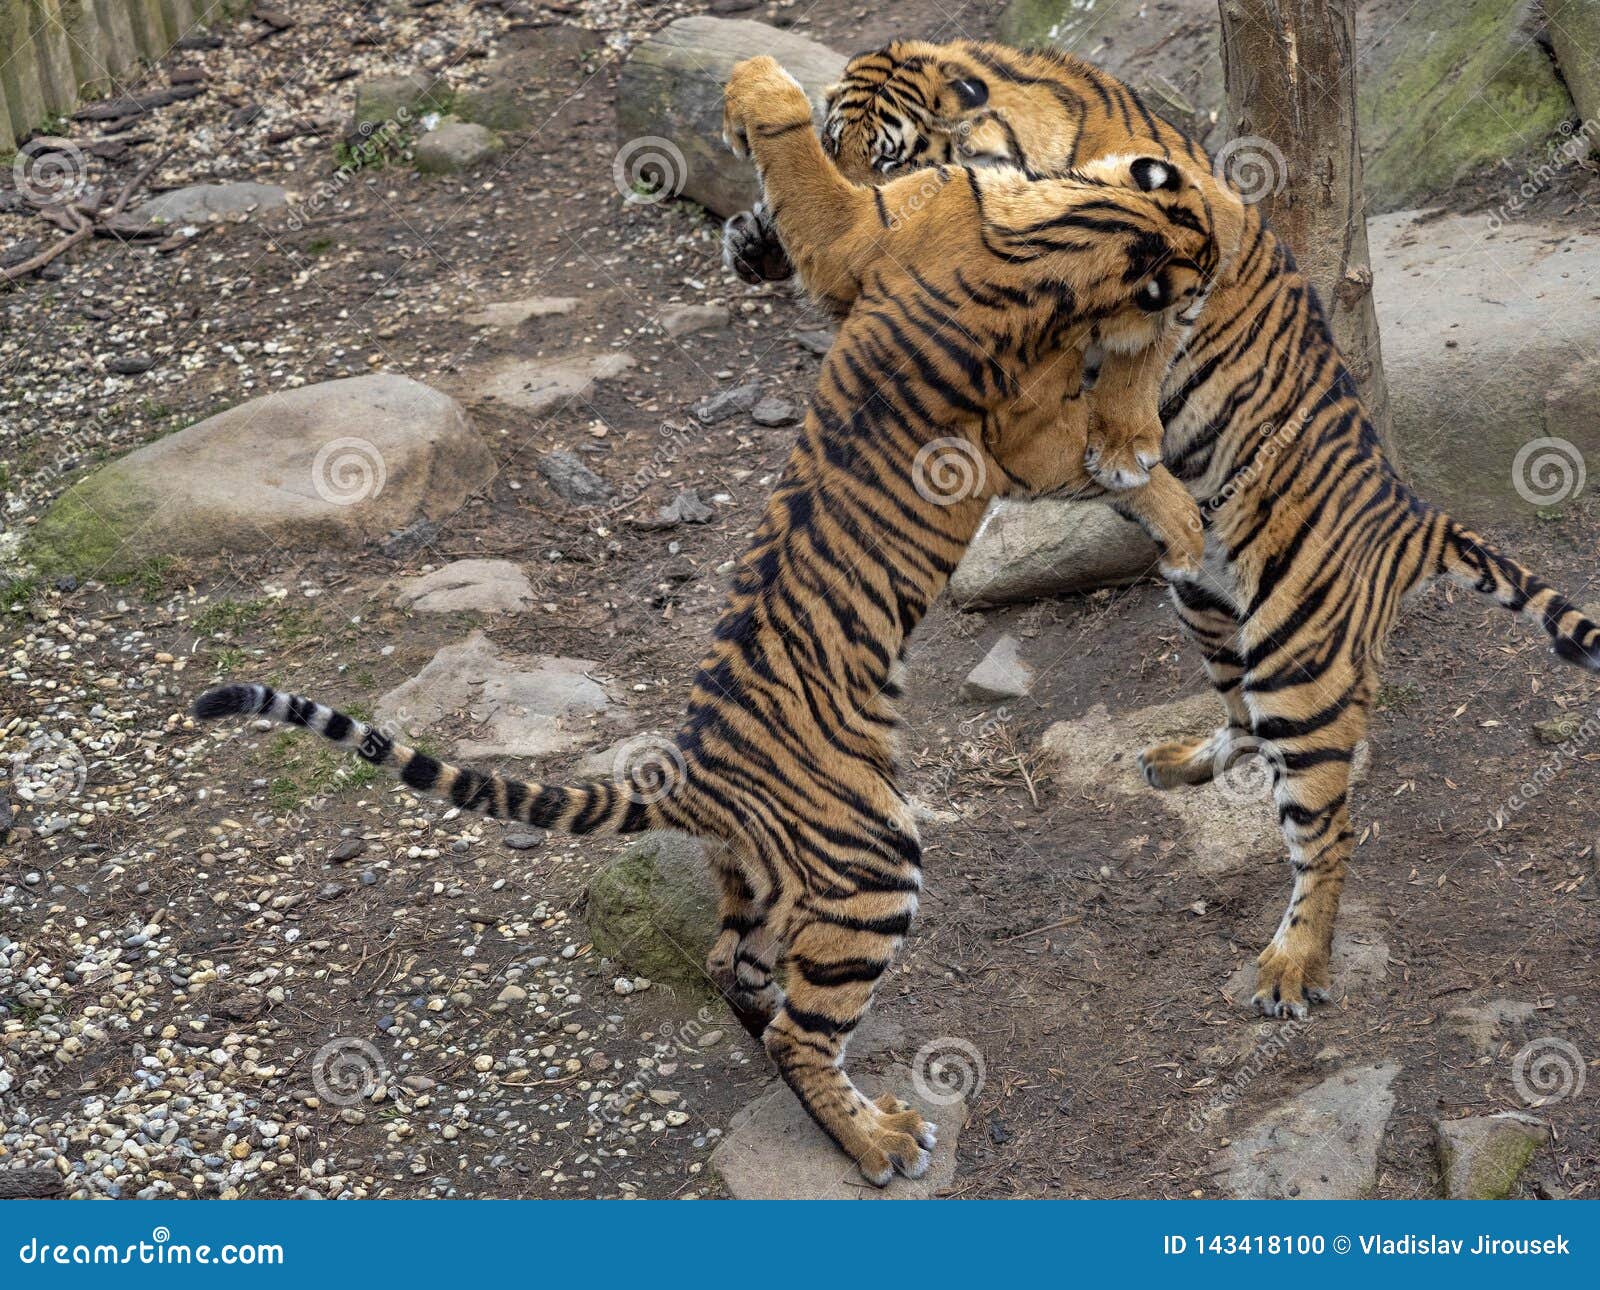 Sumatran Tiger, Panthera Tigris Sumatrae, Young Females Practice Fights  Stock Photo - Image of animal, environment: 143418100